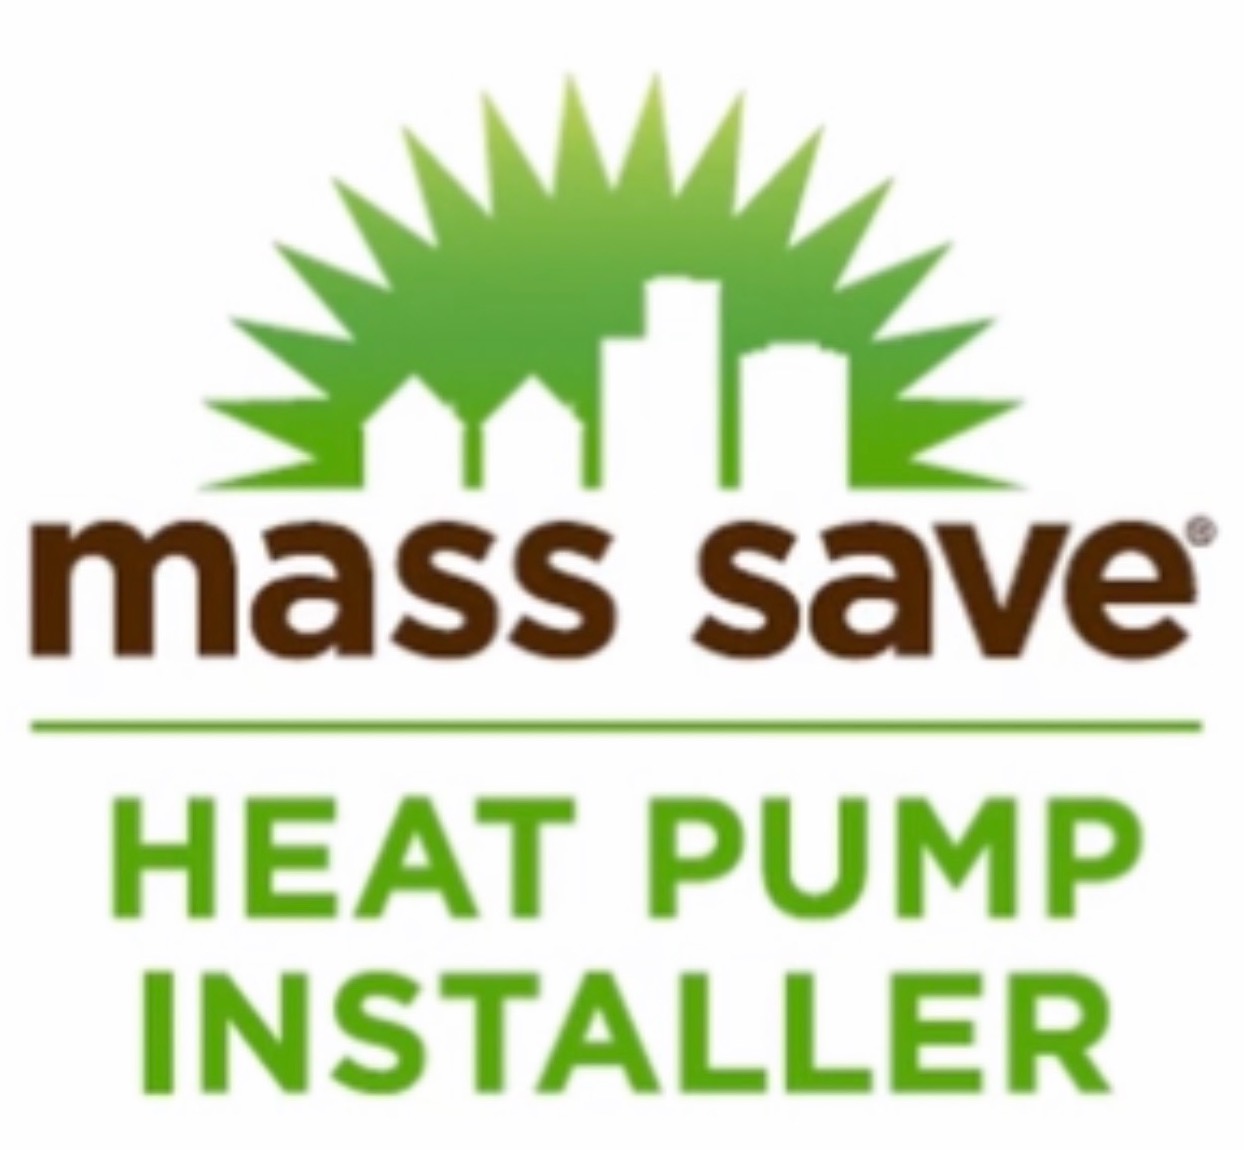 Mass Save Heat Pump Installer logo